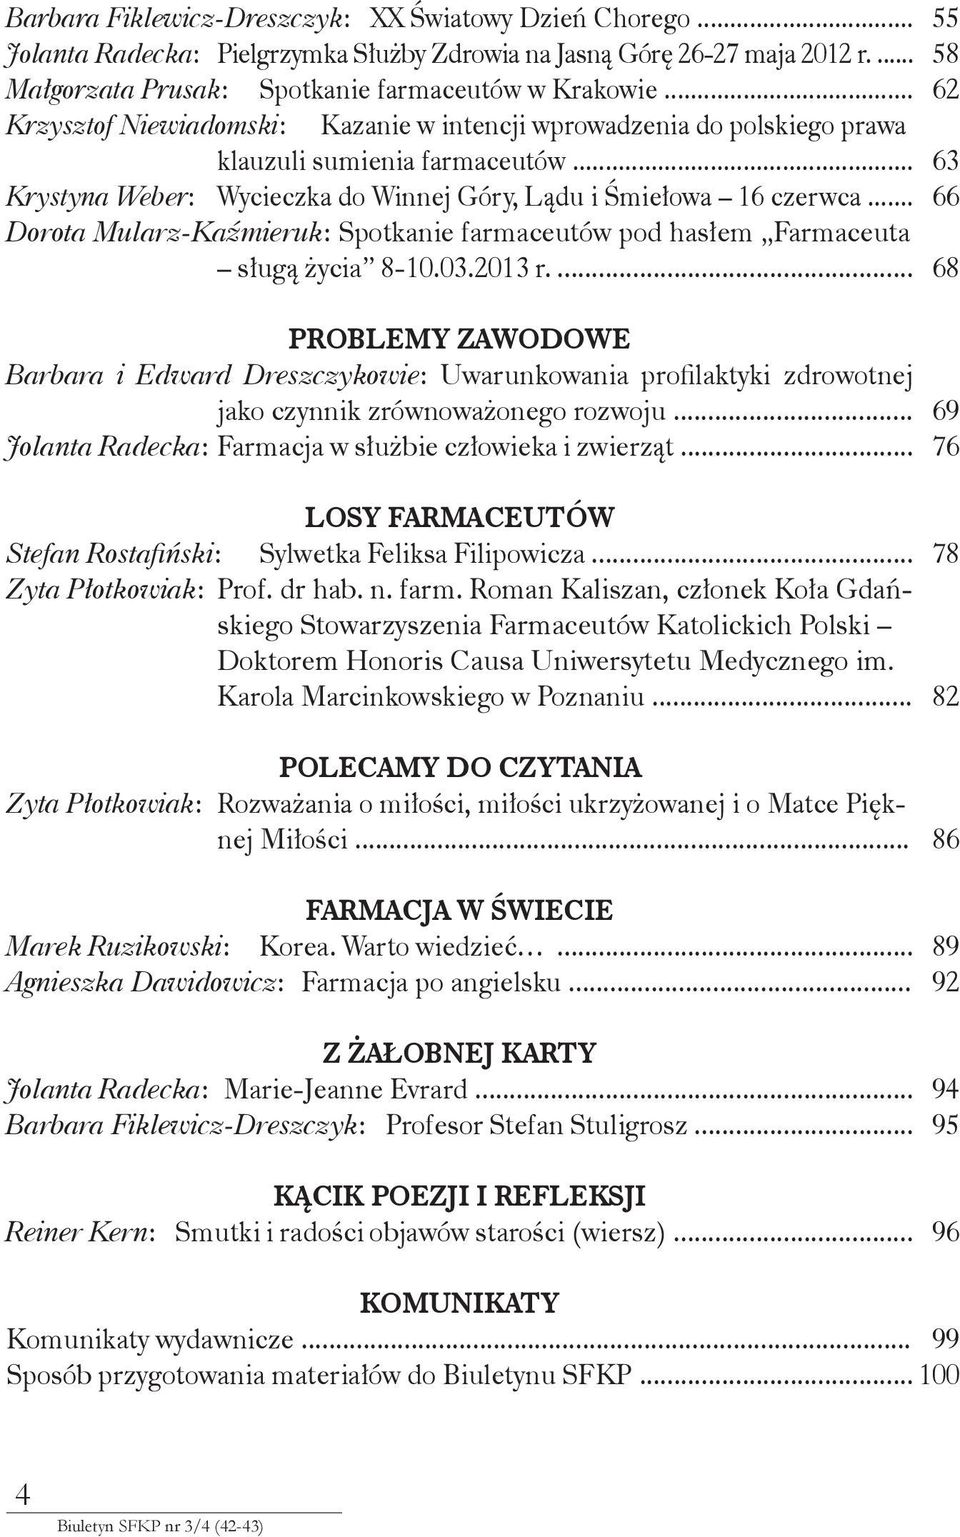 .. Dorota Mularz-Kaźmieruk: Spotkanie farmaceutów pod hasłem Farmaceuta sługą życia 8-10.03.2013 r.